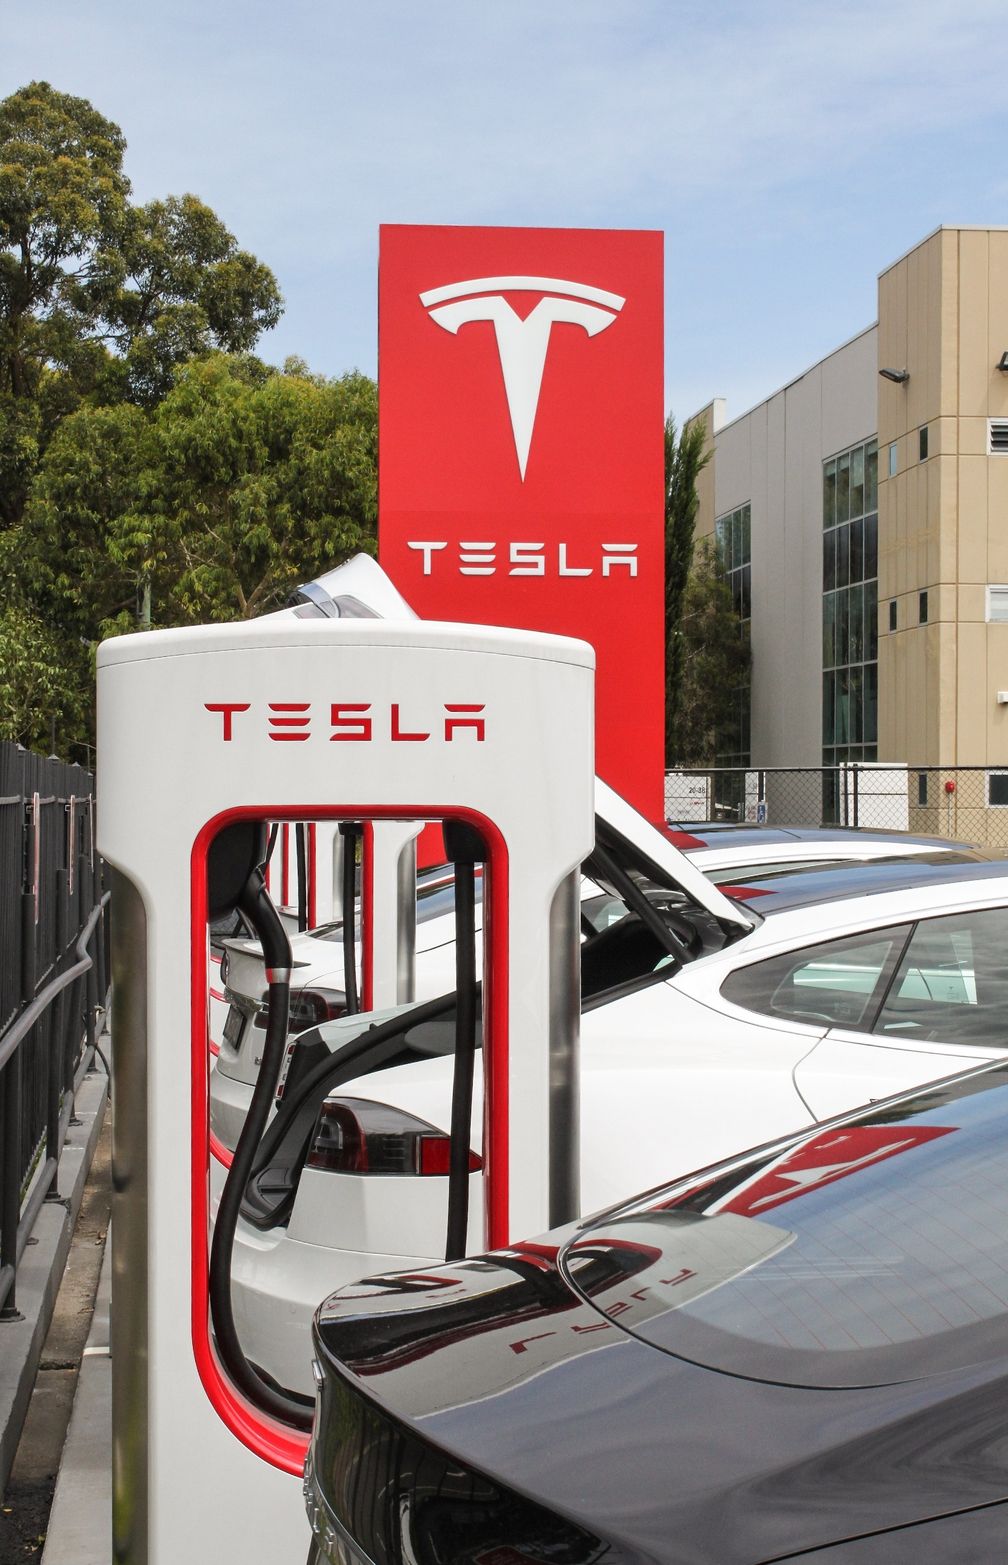 Das T im Logo von Tesla soll einen Sektor des Querschnitts eines Elektromotors darstellen